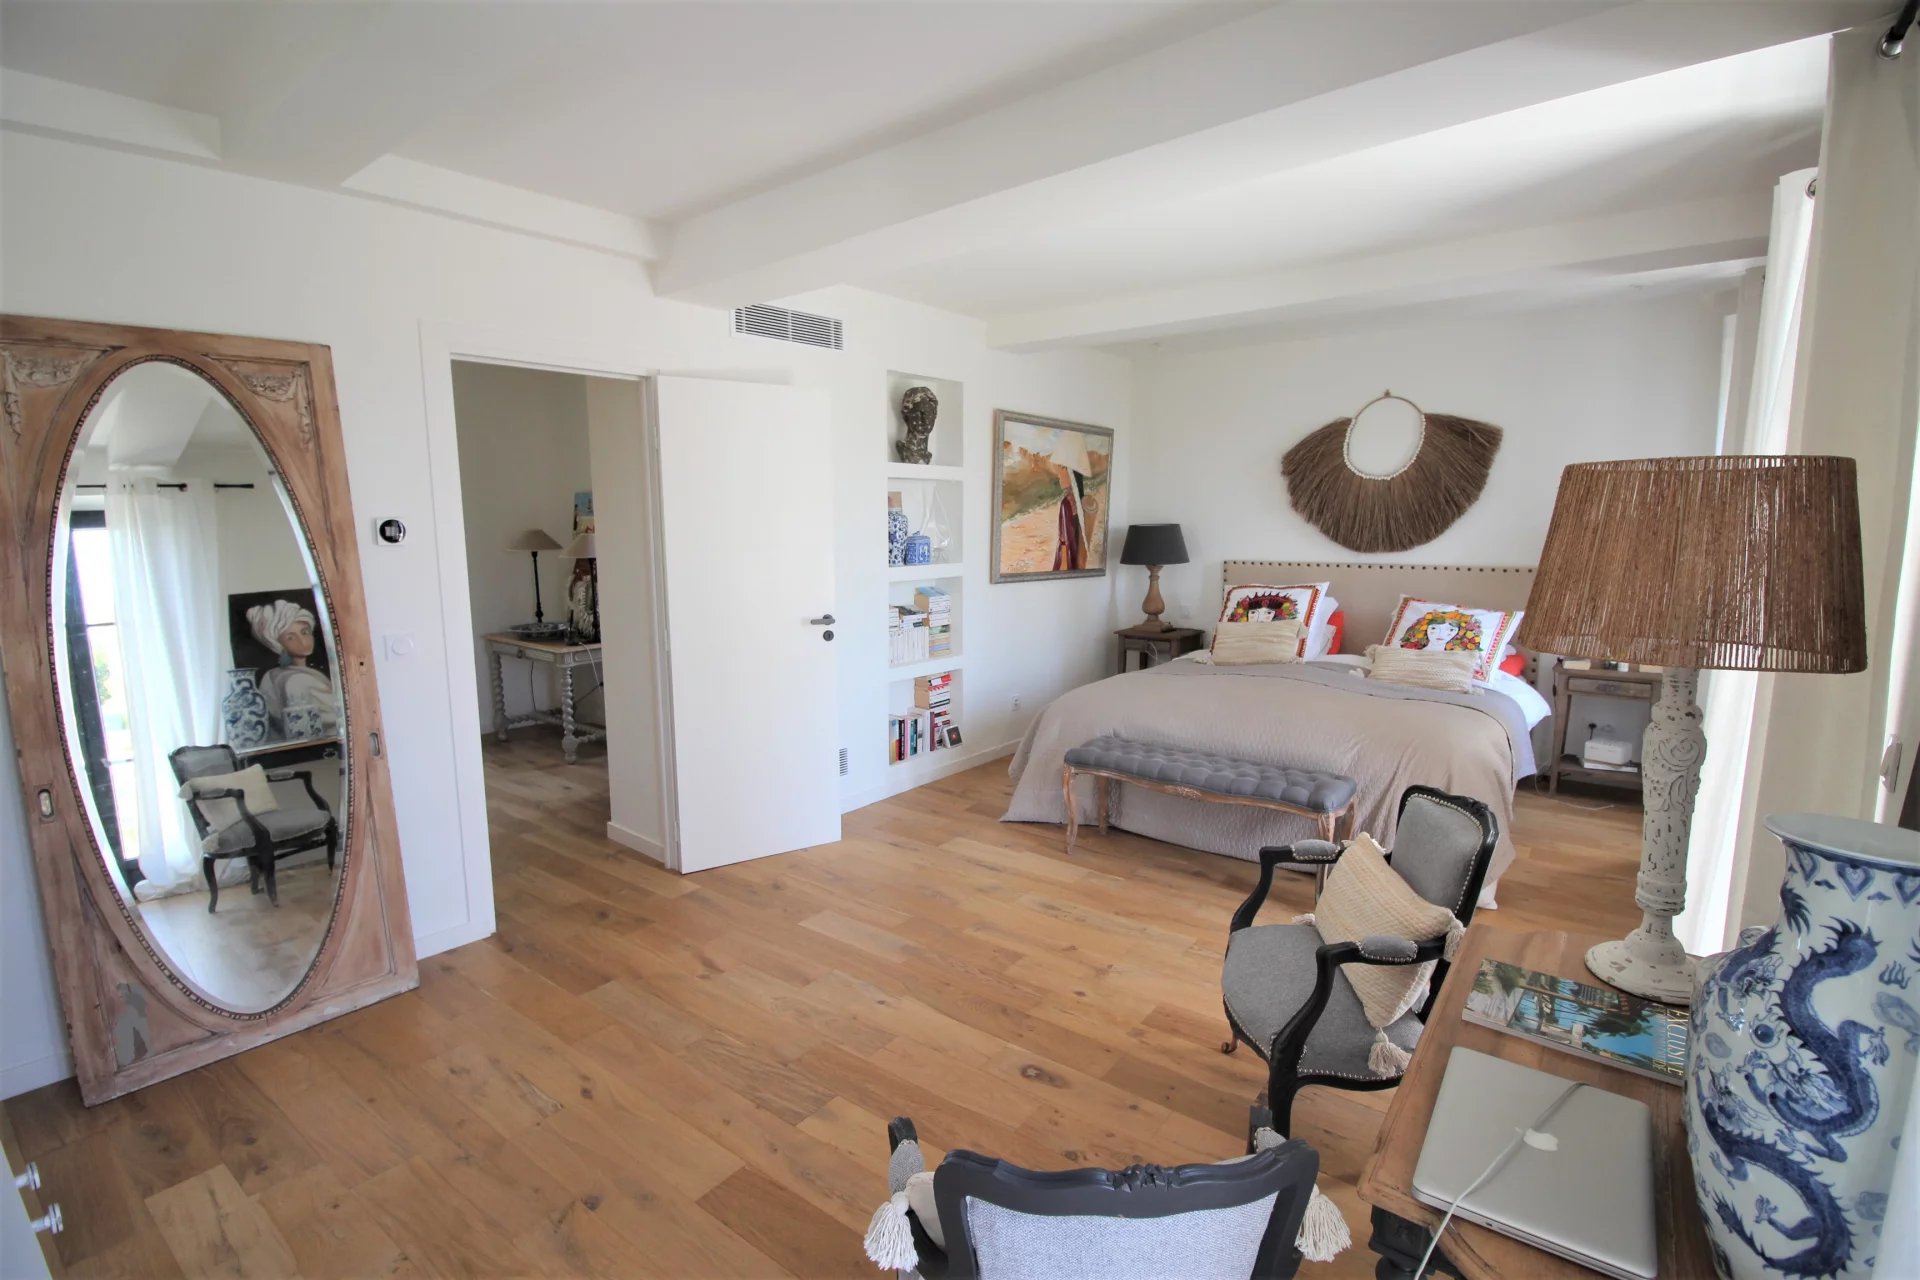 Le Cannet, résidentiel, villa de charme vue mer, 200m² env, 3 chambres, studio indépendant.